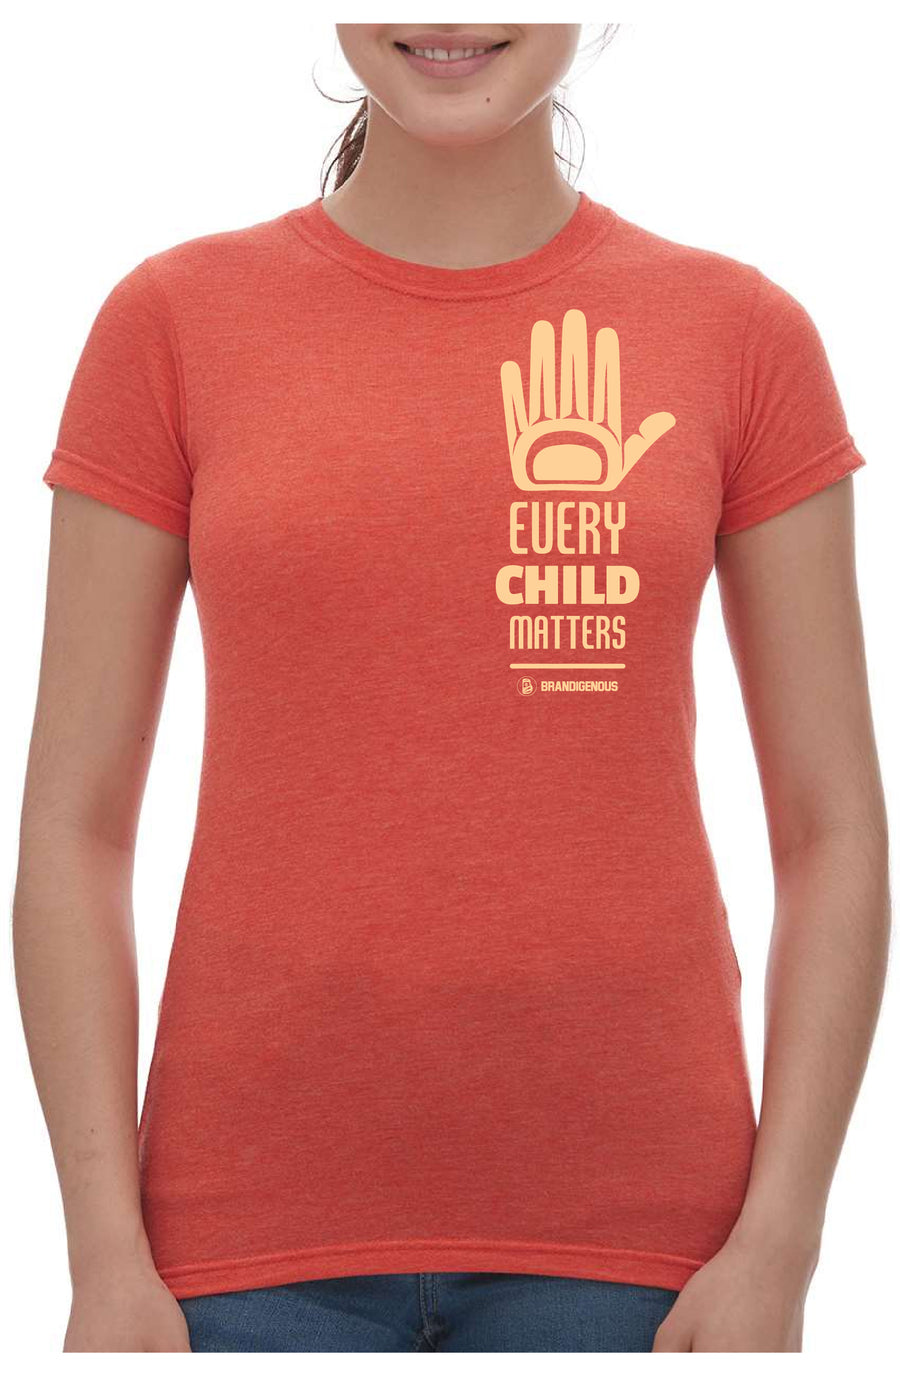 Every Child Matters -  Orange Shirt Day Tee - Women's